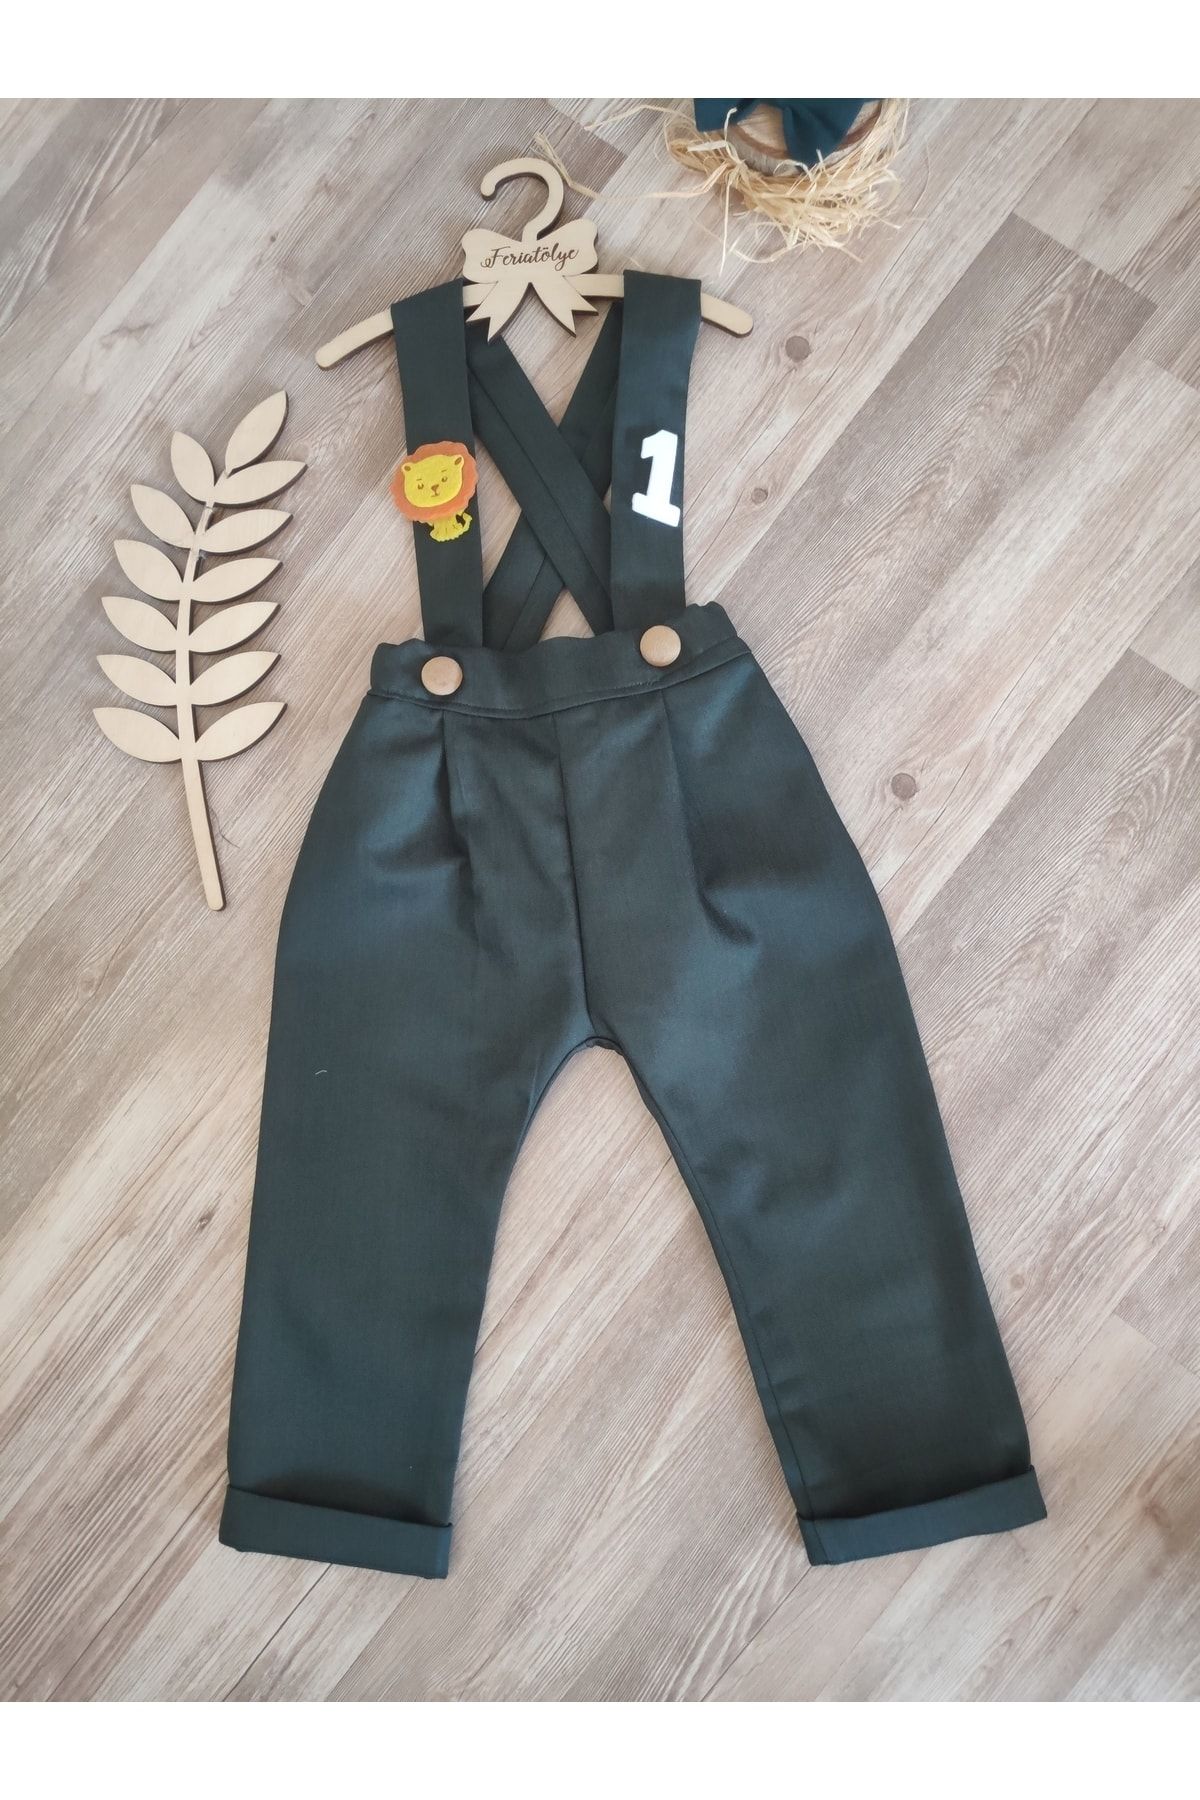 Feriatolye Koyu Yeşil Erkek Çocuk Pantolon Salopet Safari Konsepti 1 Yaş Doğum Günü Kıyafeti